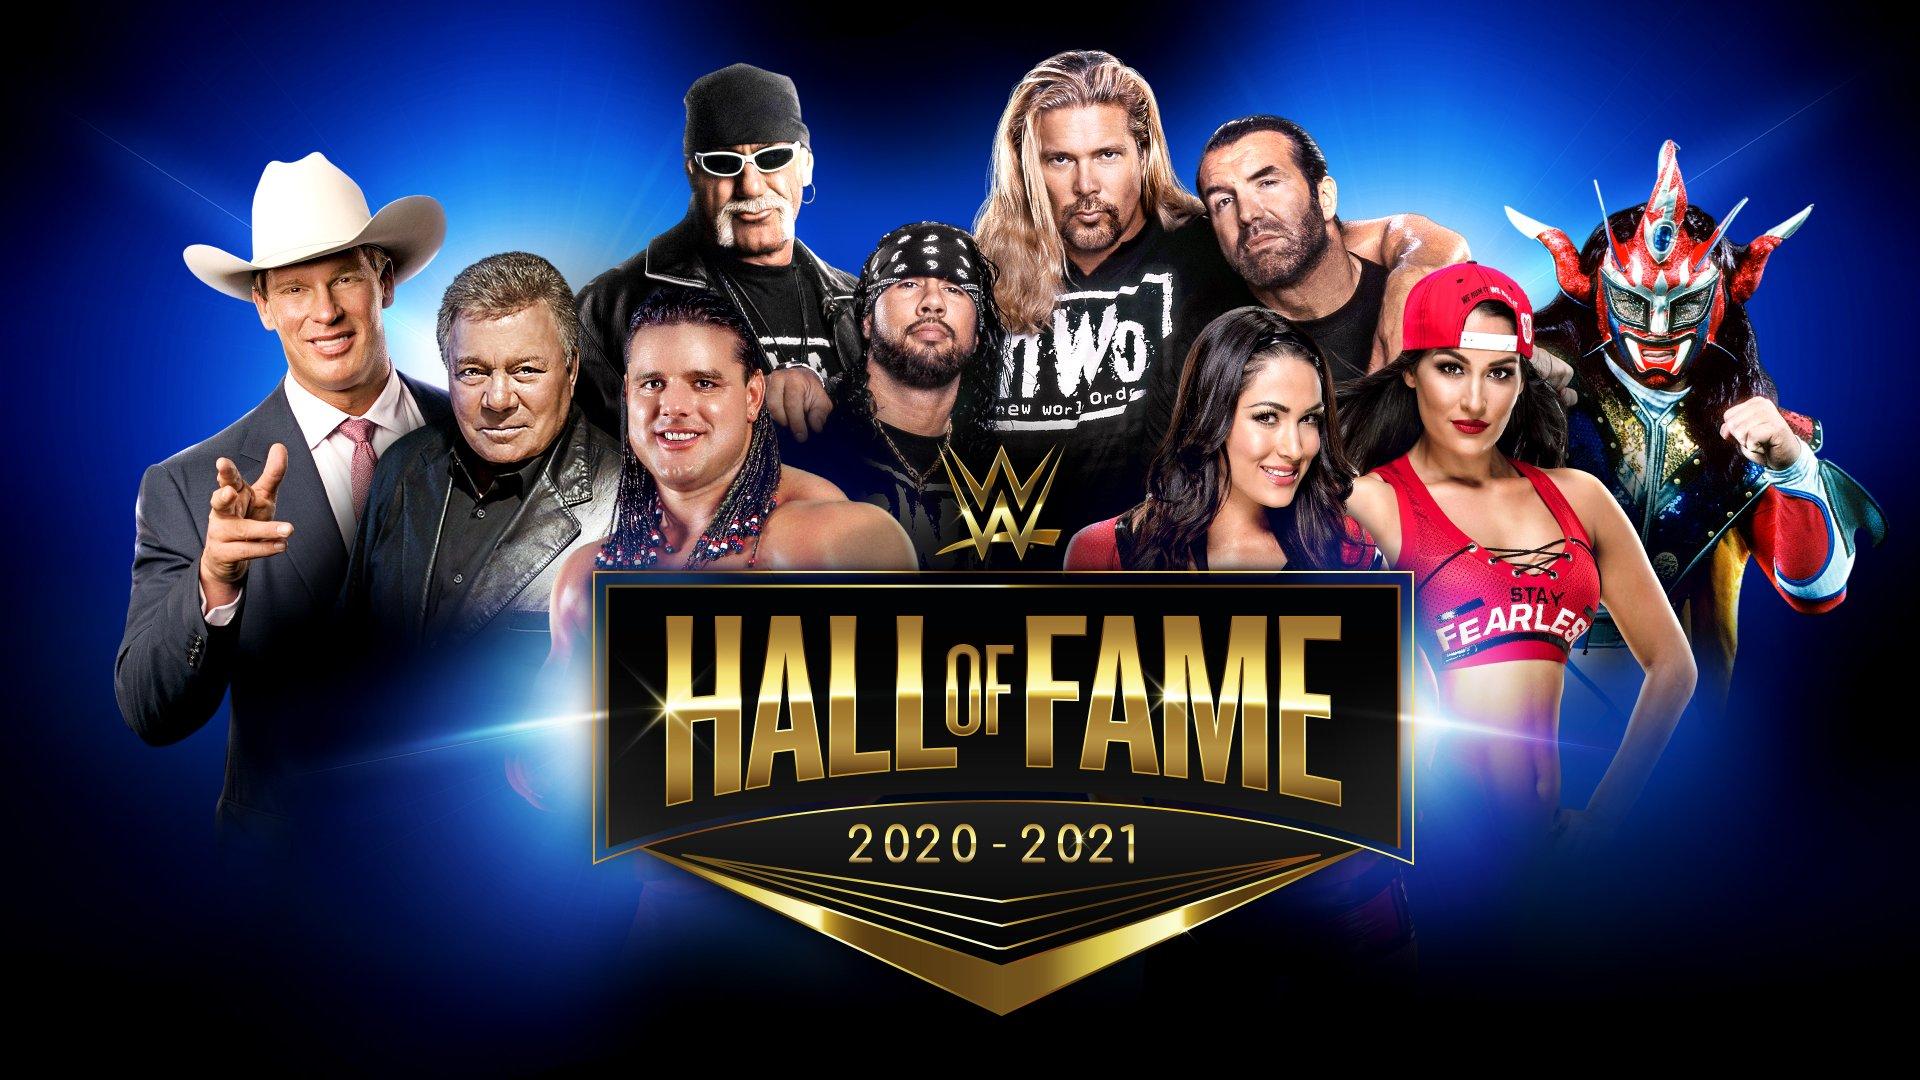 WWE Hall of Fame 2020